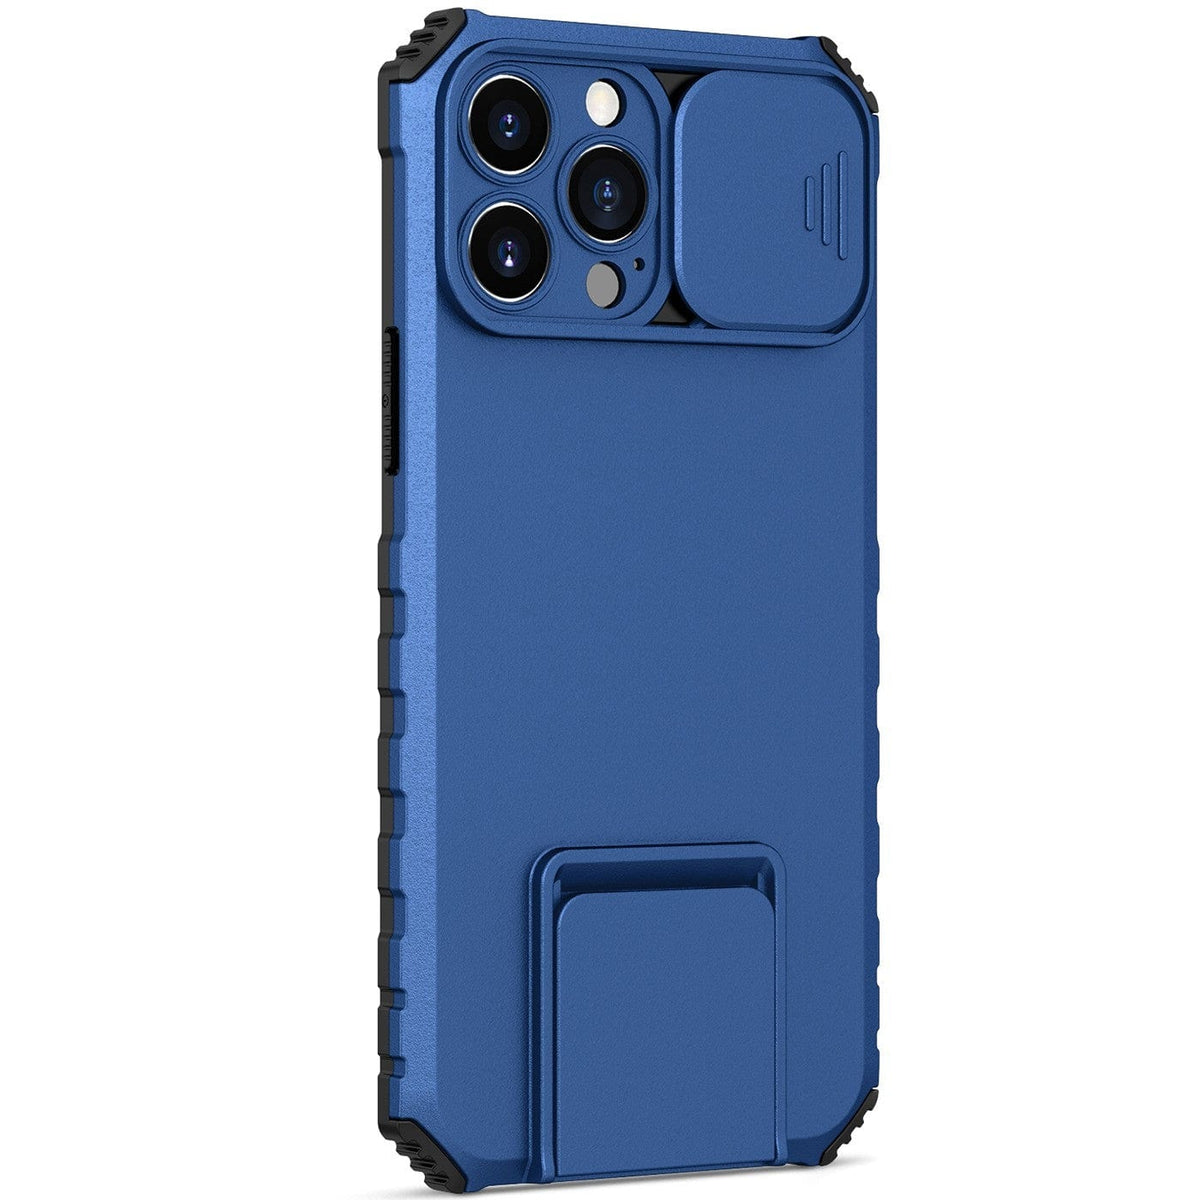 Husa Defender cu Stand pentru Samsung Galaxy S21 FE, Albastru, Suport reglabil, Antisoc, Protectie glisanta pentru camera